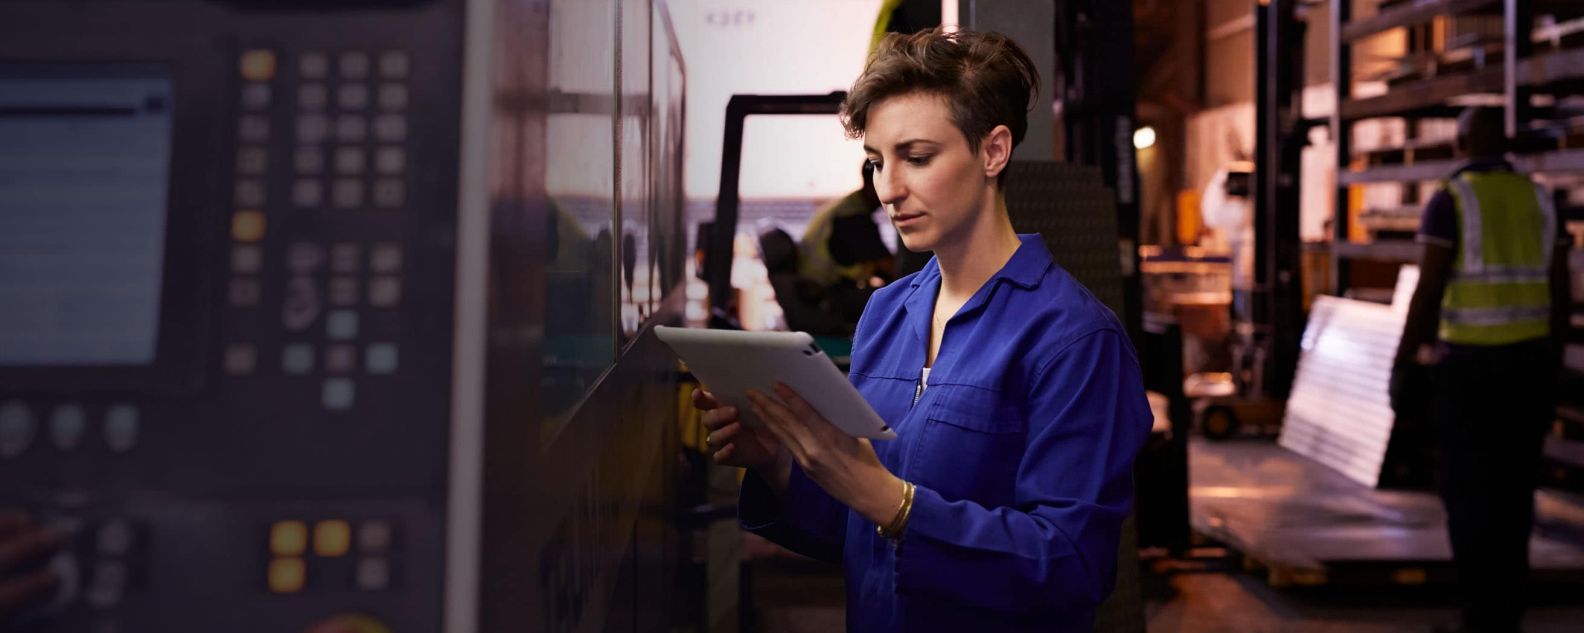 Mujer mirando un ordenador portátil en una fábrica